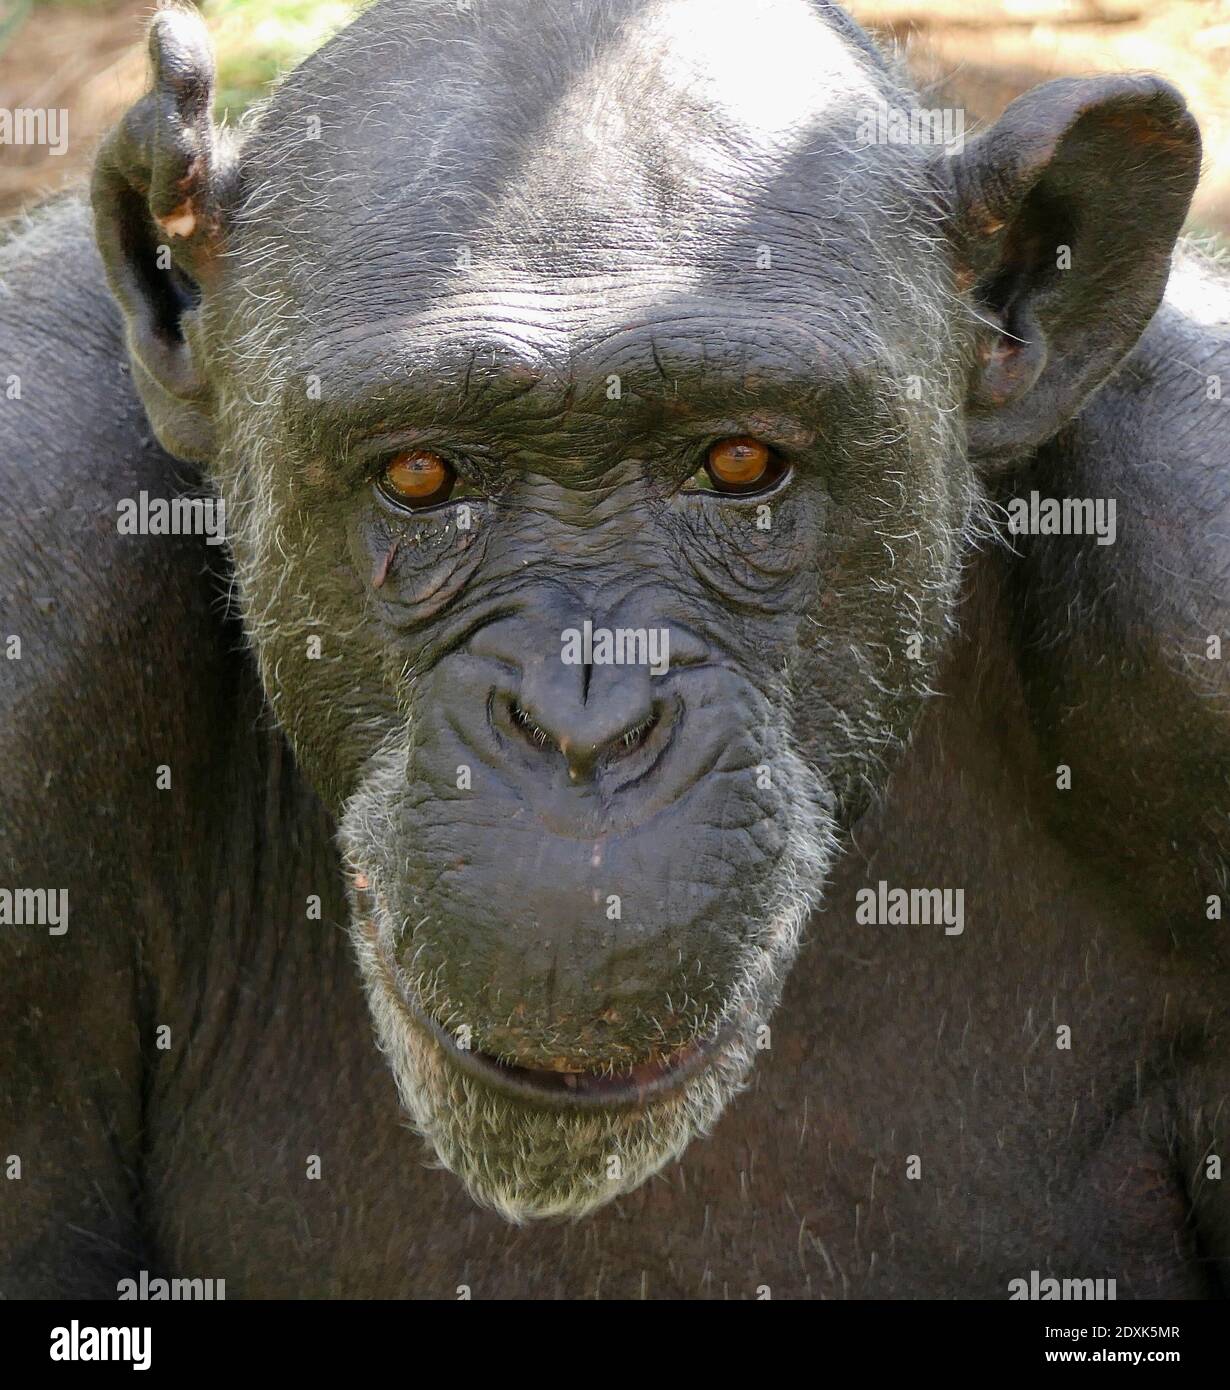 Close-up Portrait Of A Monkey Chimpanzee Stock Photo